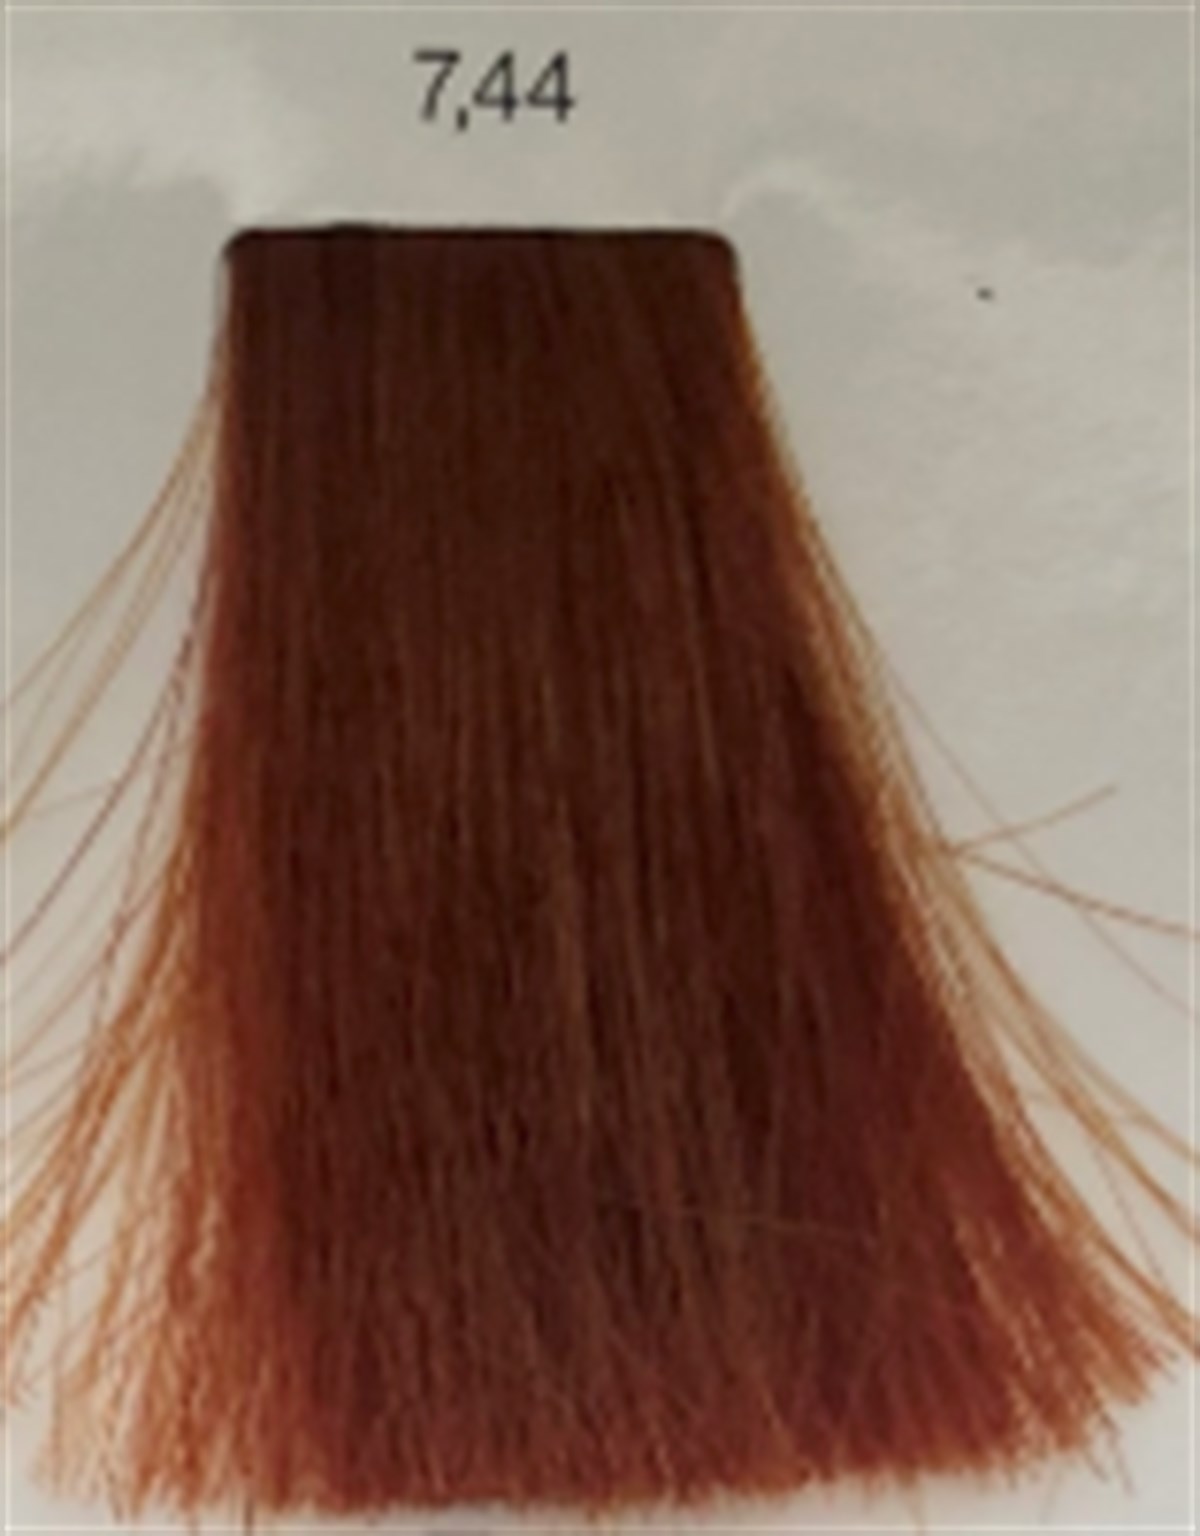 inoa saç boyası 7.44İNOA SAÇ BOYASI-www.arzumkozmetik.com